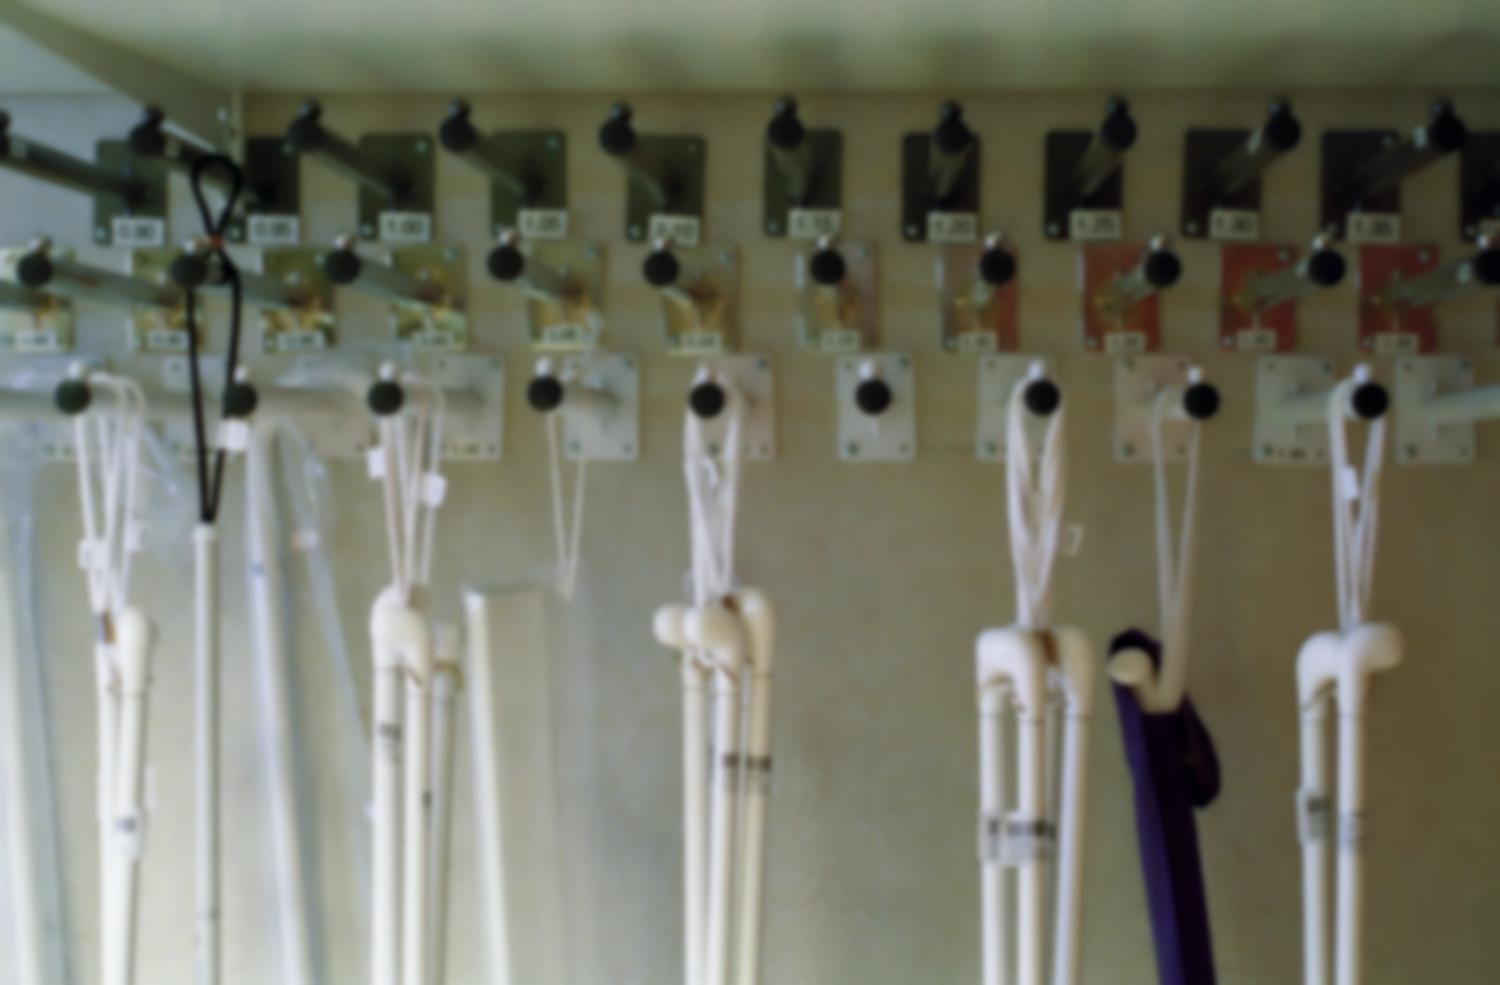 Des tiges fixées au mur sur trois rangées et étiquetées par tailles permettent de présenter les différents modèles de cannes blanches de la boutique de matériel spécialisé de l'Association Valentin Haüy. Paris, octobre 2005.